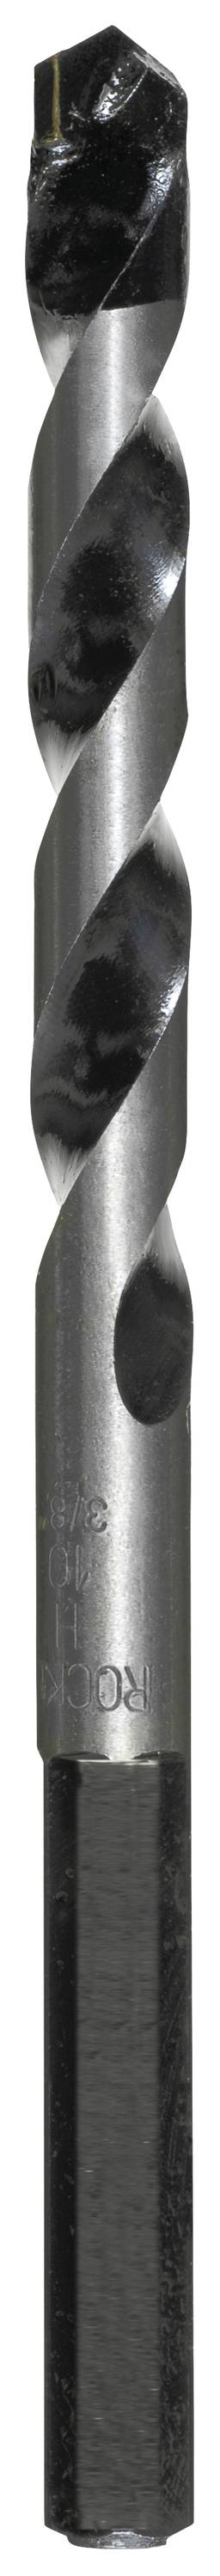 KWB 050700 Hartmetall Beton-Spiralbohrer 10 mm Gesamtlänge 140 mm Zylinderschaft 1 Stück (050700)